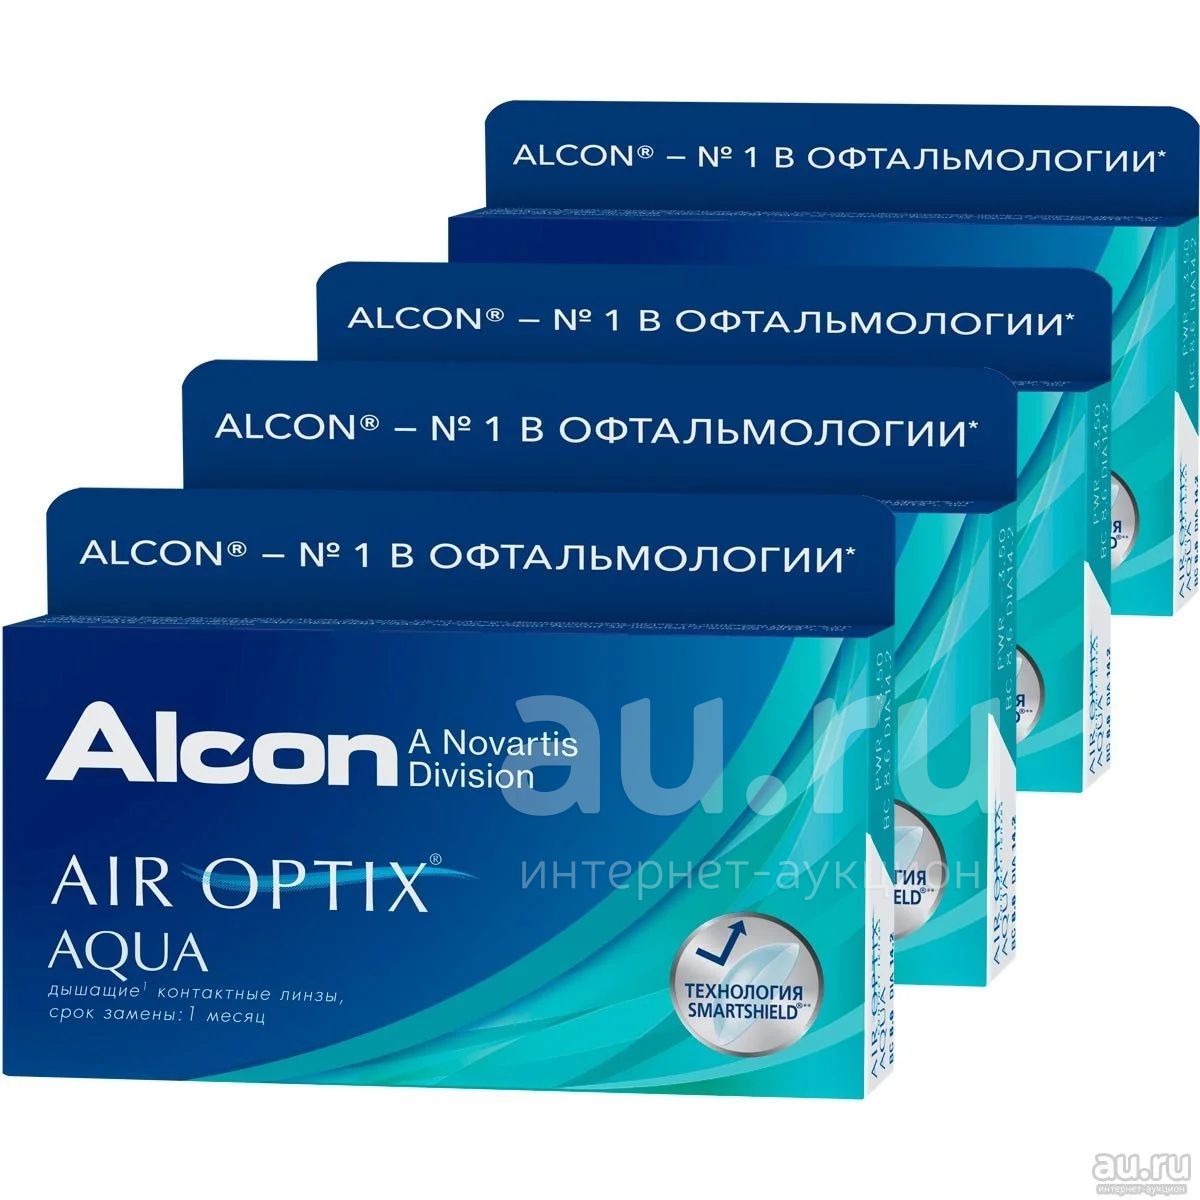 Alcon. Линзы Алкон АИР Оптикс. Air Optix Aqua (3 линзы). Алкон АИР Оптикс кривизна. Линзы АИР Оптикс 1 штука.